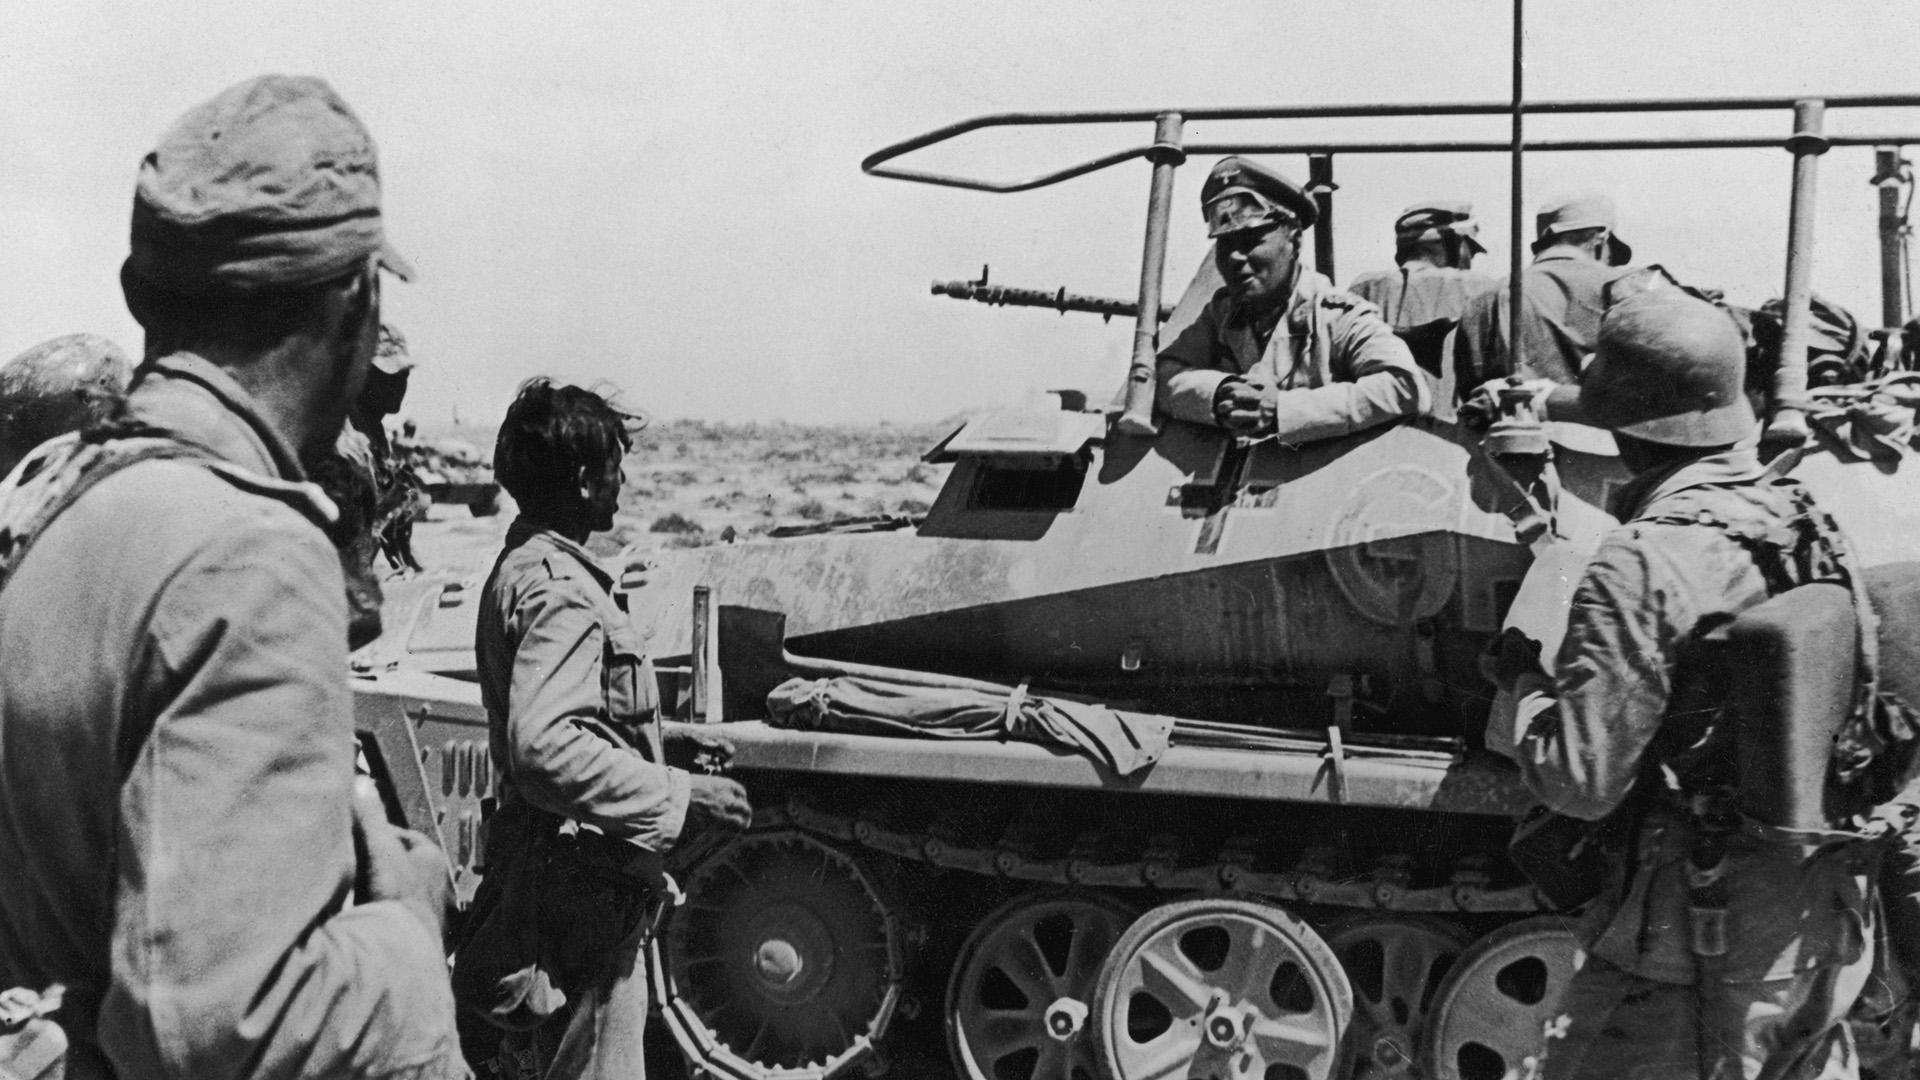 Erwin Rommel le habla a sus soldados durante el sitio de Tobruk, en Libia, el 22 de junio de 1942, cuando todavía era la estrella del ejército nazi (Photo by Heinrich Hoffmann/Hulton Archive/Getty Images)